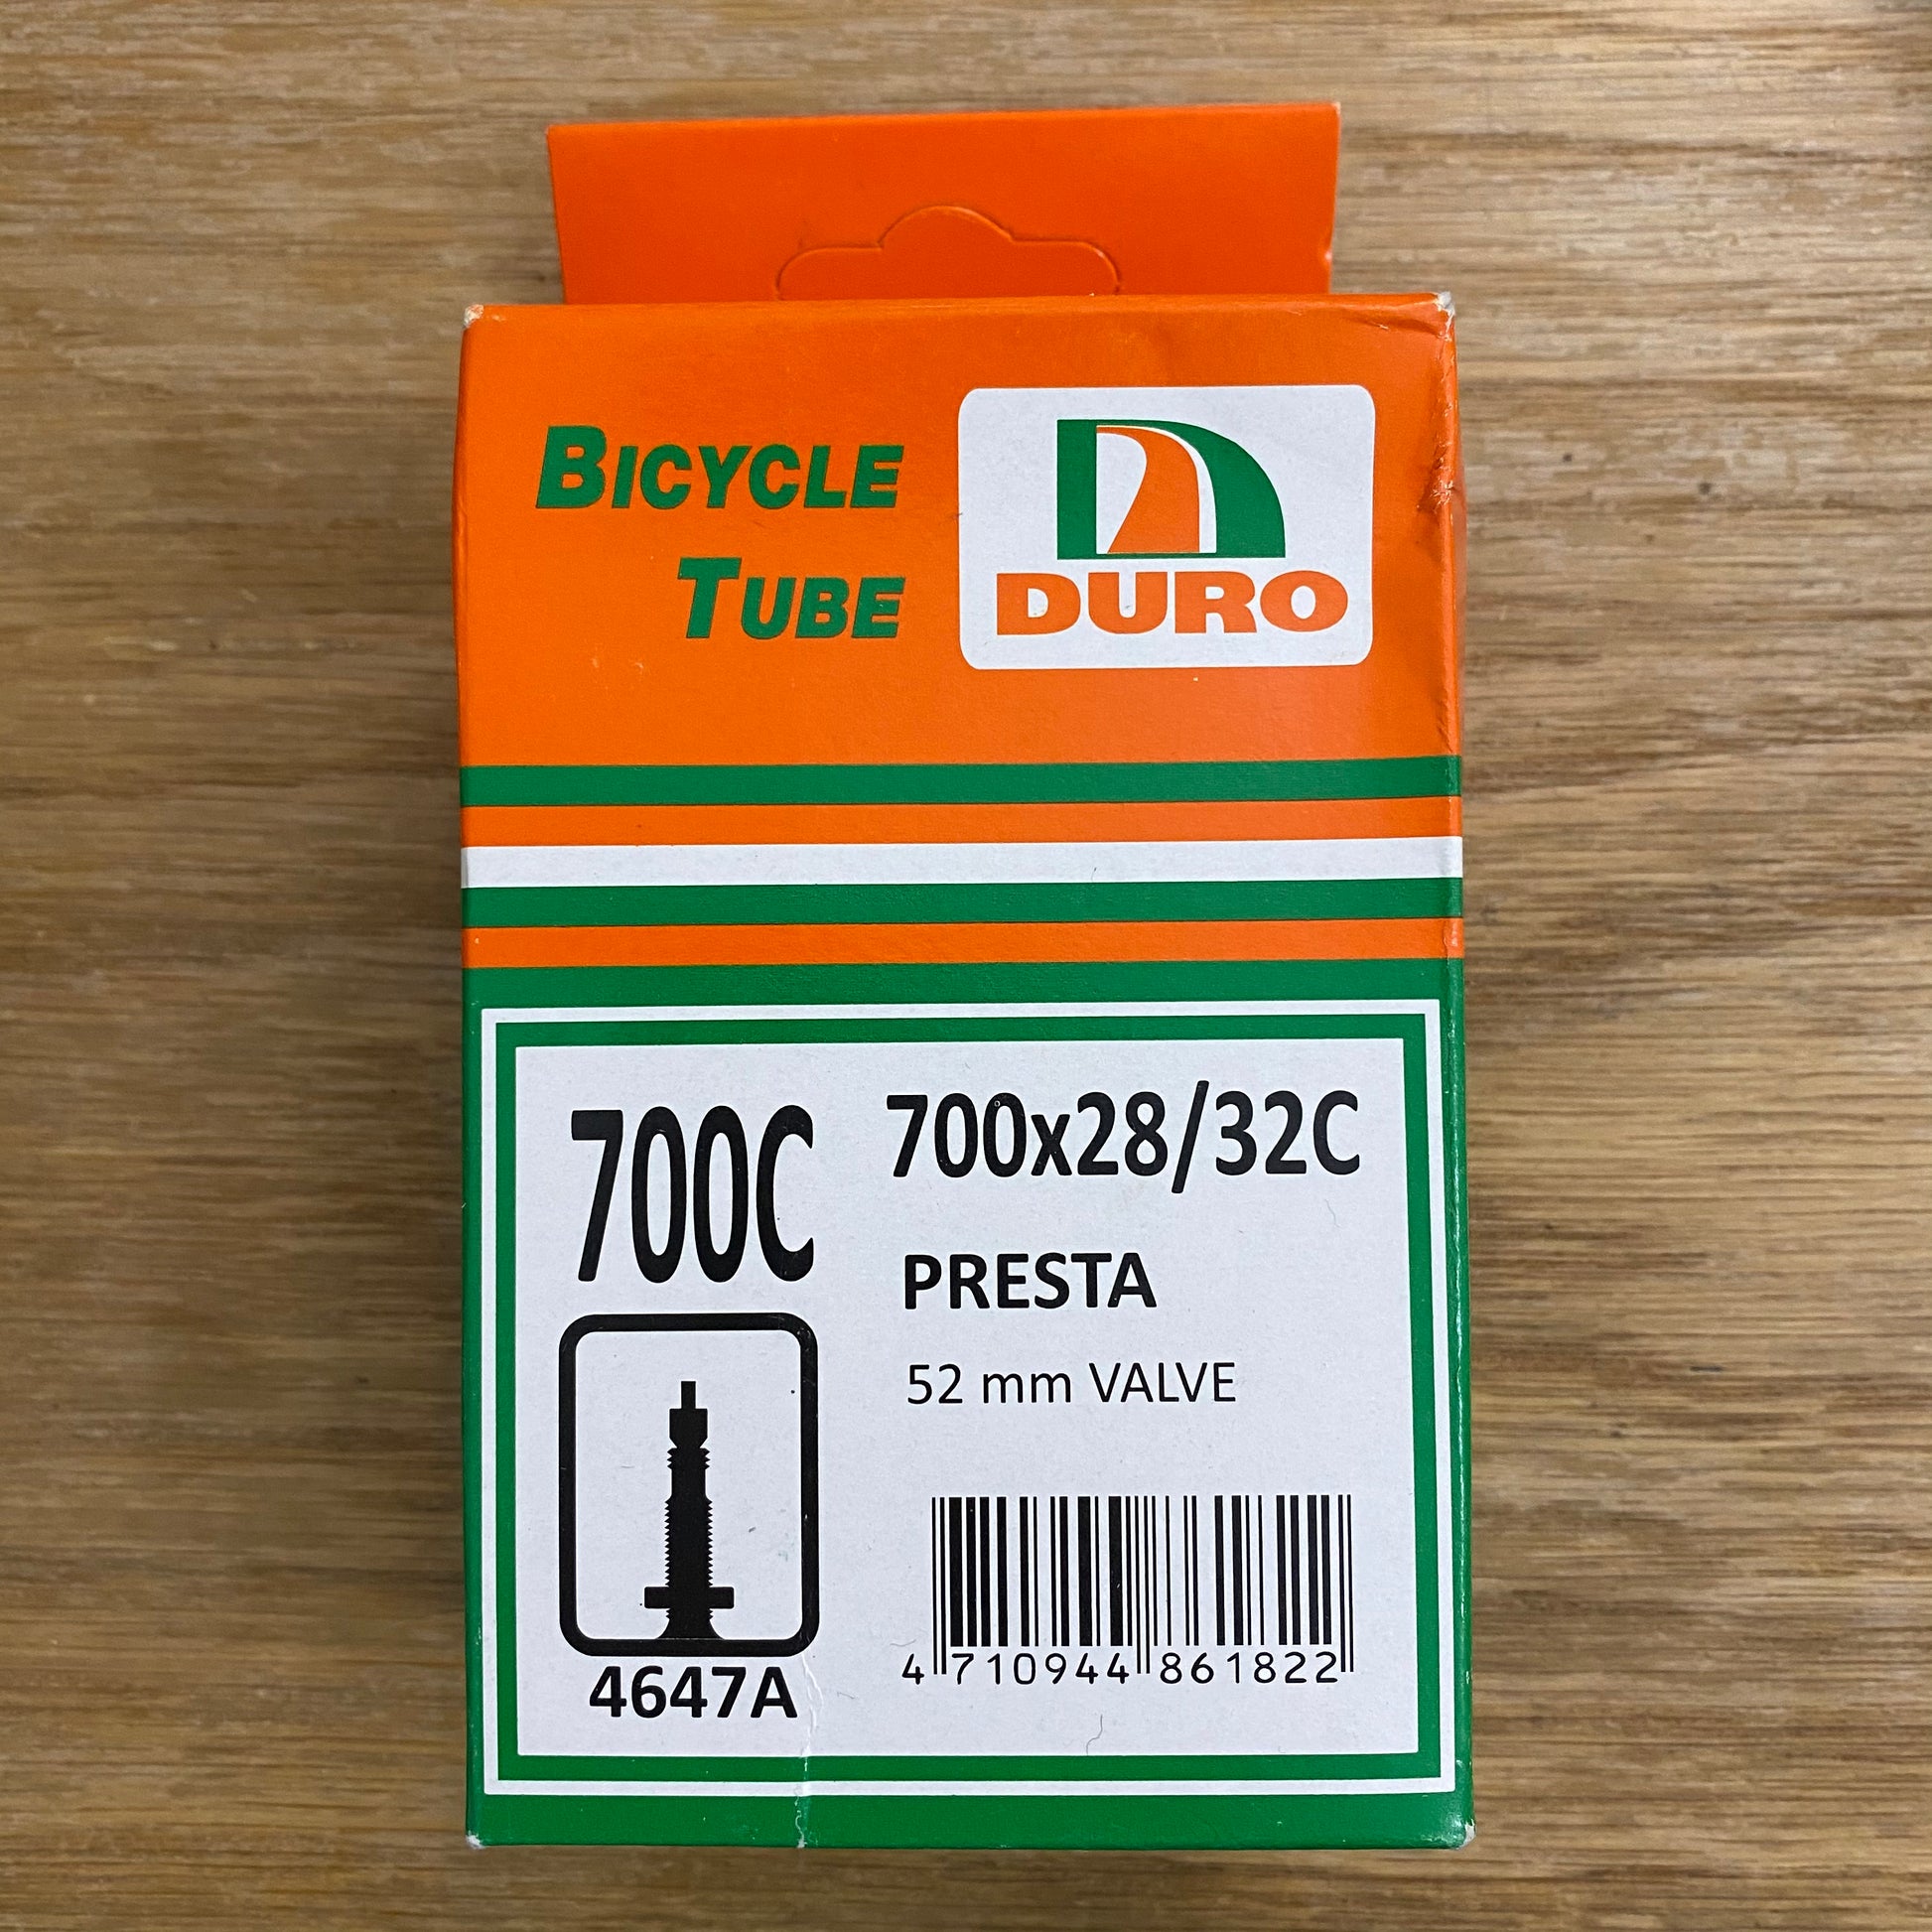 DURO Bicycle Tubes 700C